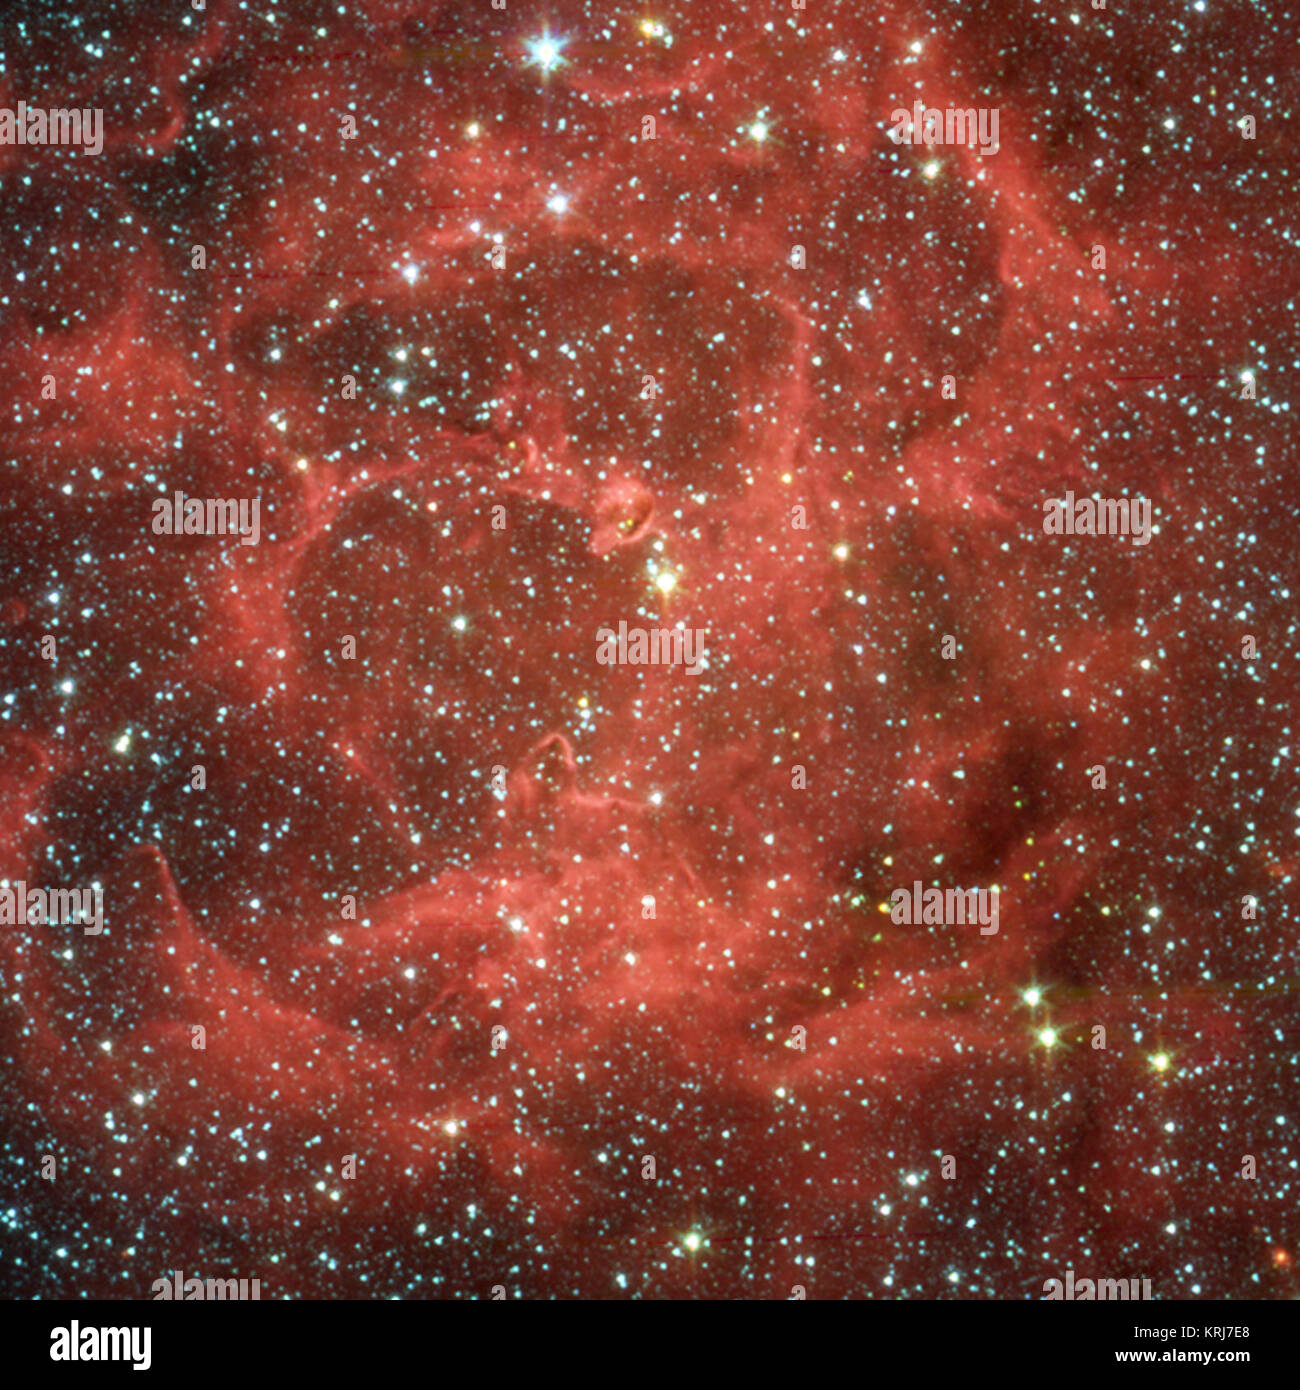 Dieses Bild zeigt eine Nahaufnahme infrarot Ansicht von NASA's Spitzer Space Telescope der glühenden Trifid Nebula, eine riesige Sterne bilden Wolke aus Gas und Staub entfernt 5.400 Lichtjahre entfernt im Sternbild Schütze. Die Daten der gleichen Region aus dem Institut für Radioastronomie millimeter Teleskop in Spanien vier dichten Knoten, oder Kerne offenbart, der Staub, die "Inkubatoren" für EMBRYONALE Sterne. Die Astronomen dachten diese Kerne noch nicht für Sterne reif waren, bis Spitzer die Wärme des schnell wachsenden massive Embryonen im Inneren versteckt entdeckt. Diese Embryonen in der falschen Farbe Spitzer aufgedeckt werden pictu Stockfoto